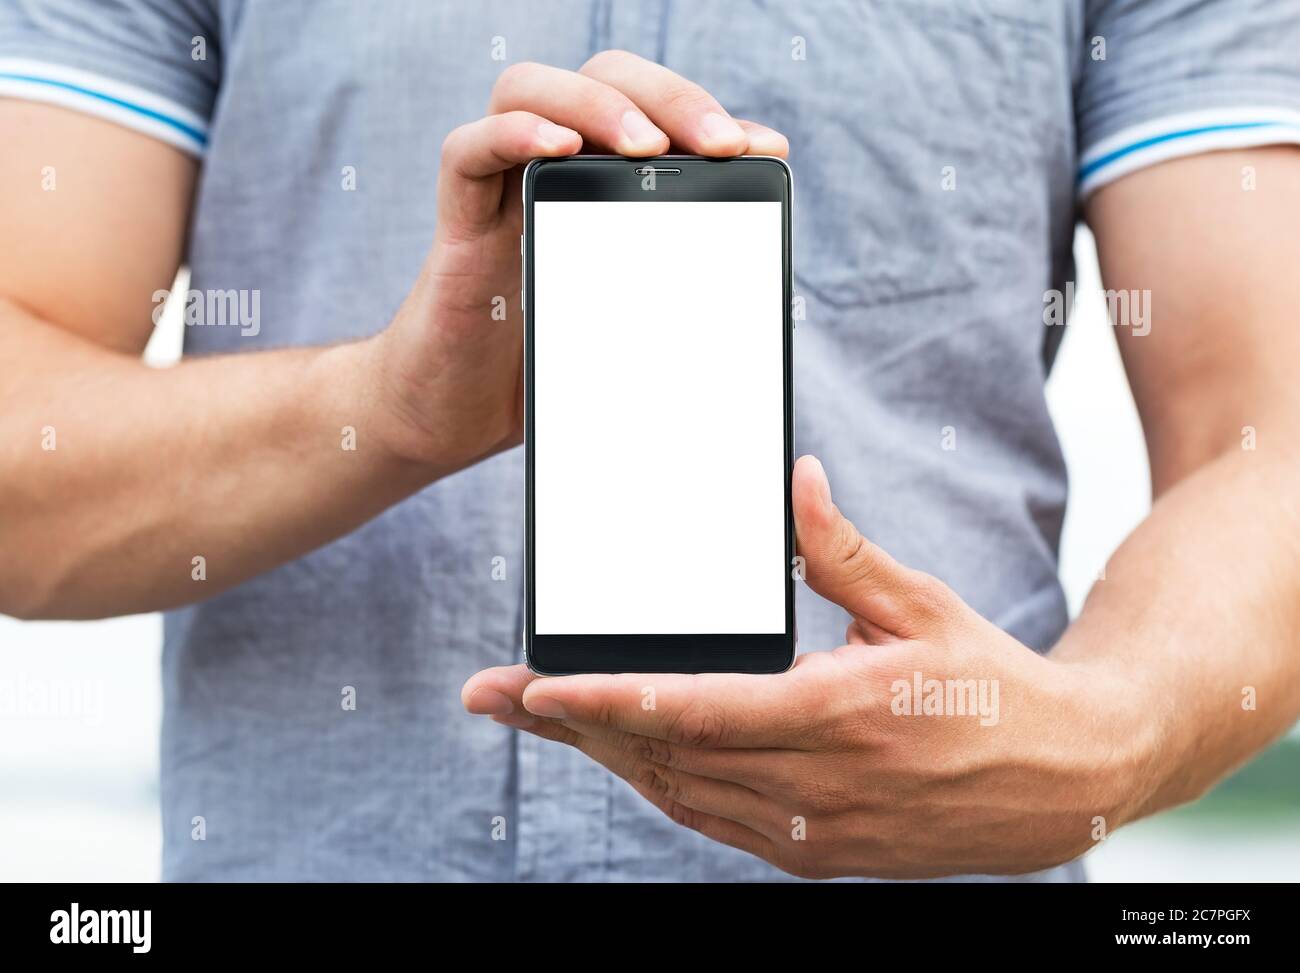 Jeune homme montrant une application de téléphone mobile, gros plan Banque D'Images